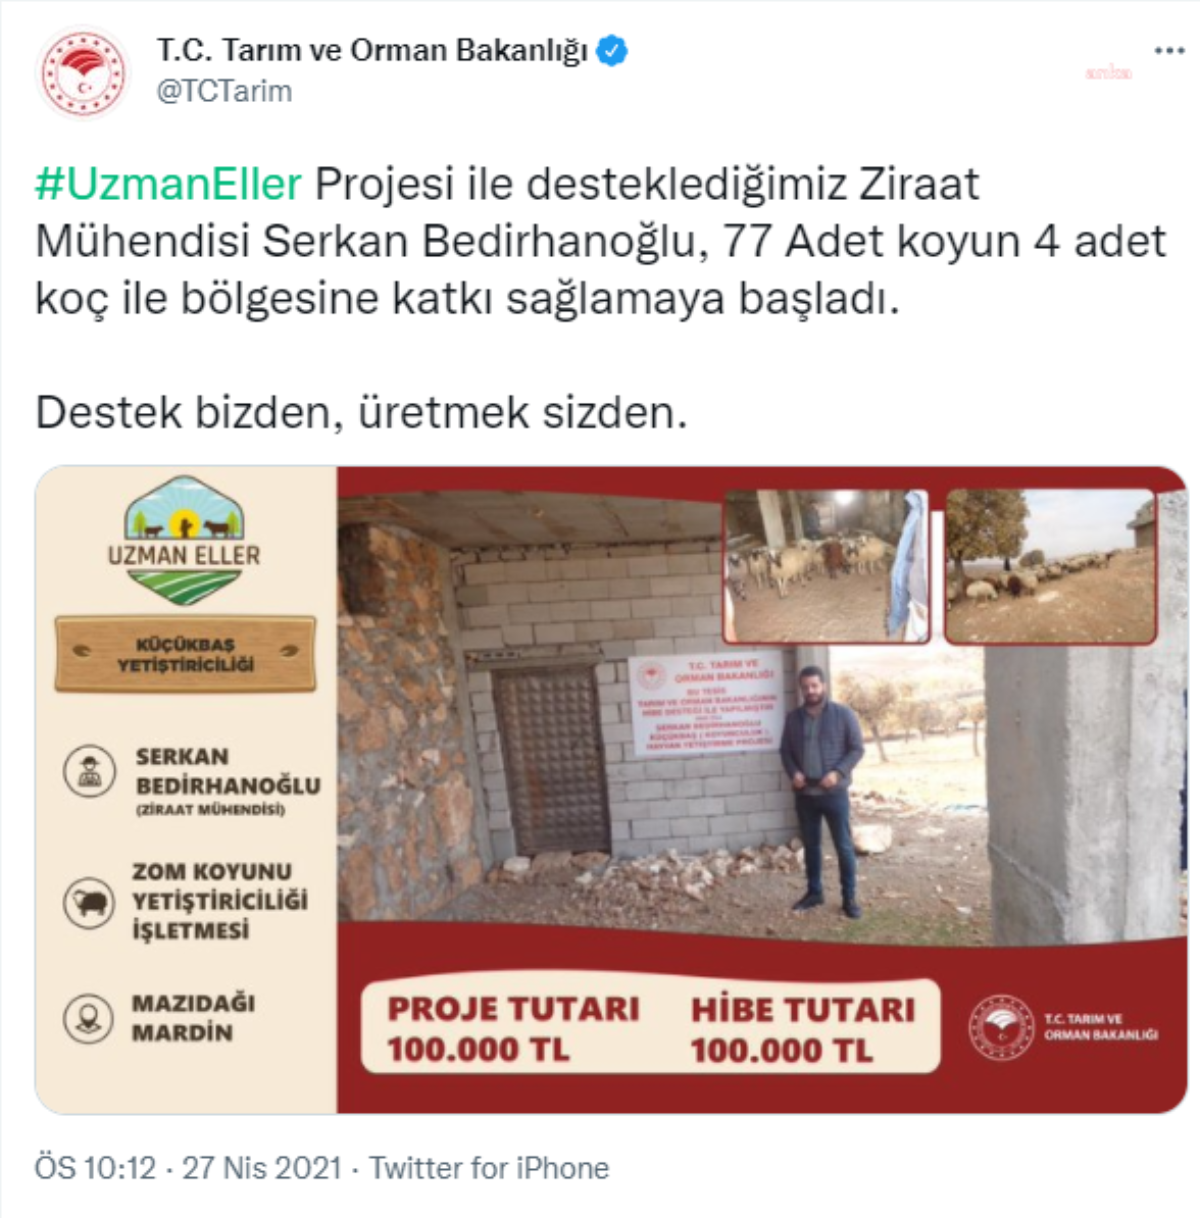 HDP'li Turan'dan 'AB hibeleri AKP'ye gitti' çıkışı: Kanıtlar var